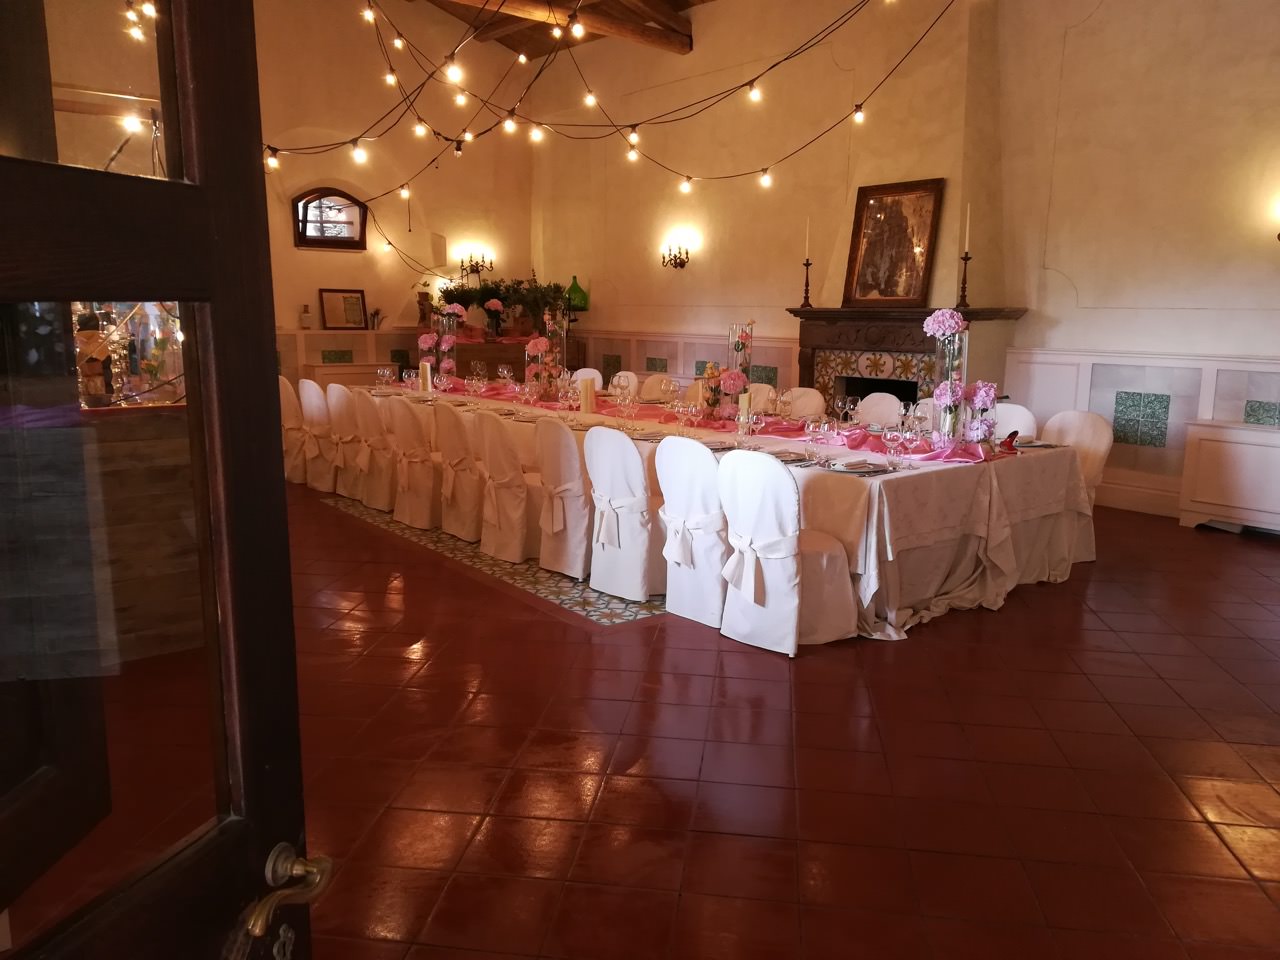 Interni delle sale ricevimento per matrimoni con allestimenti floreali - Villa Ventura - Falerna - Catanzaro - Calabria